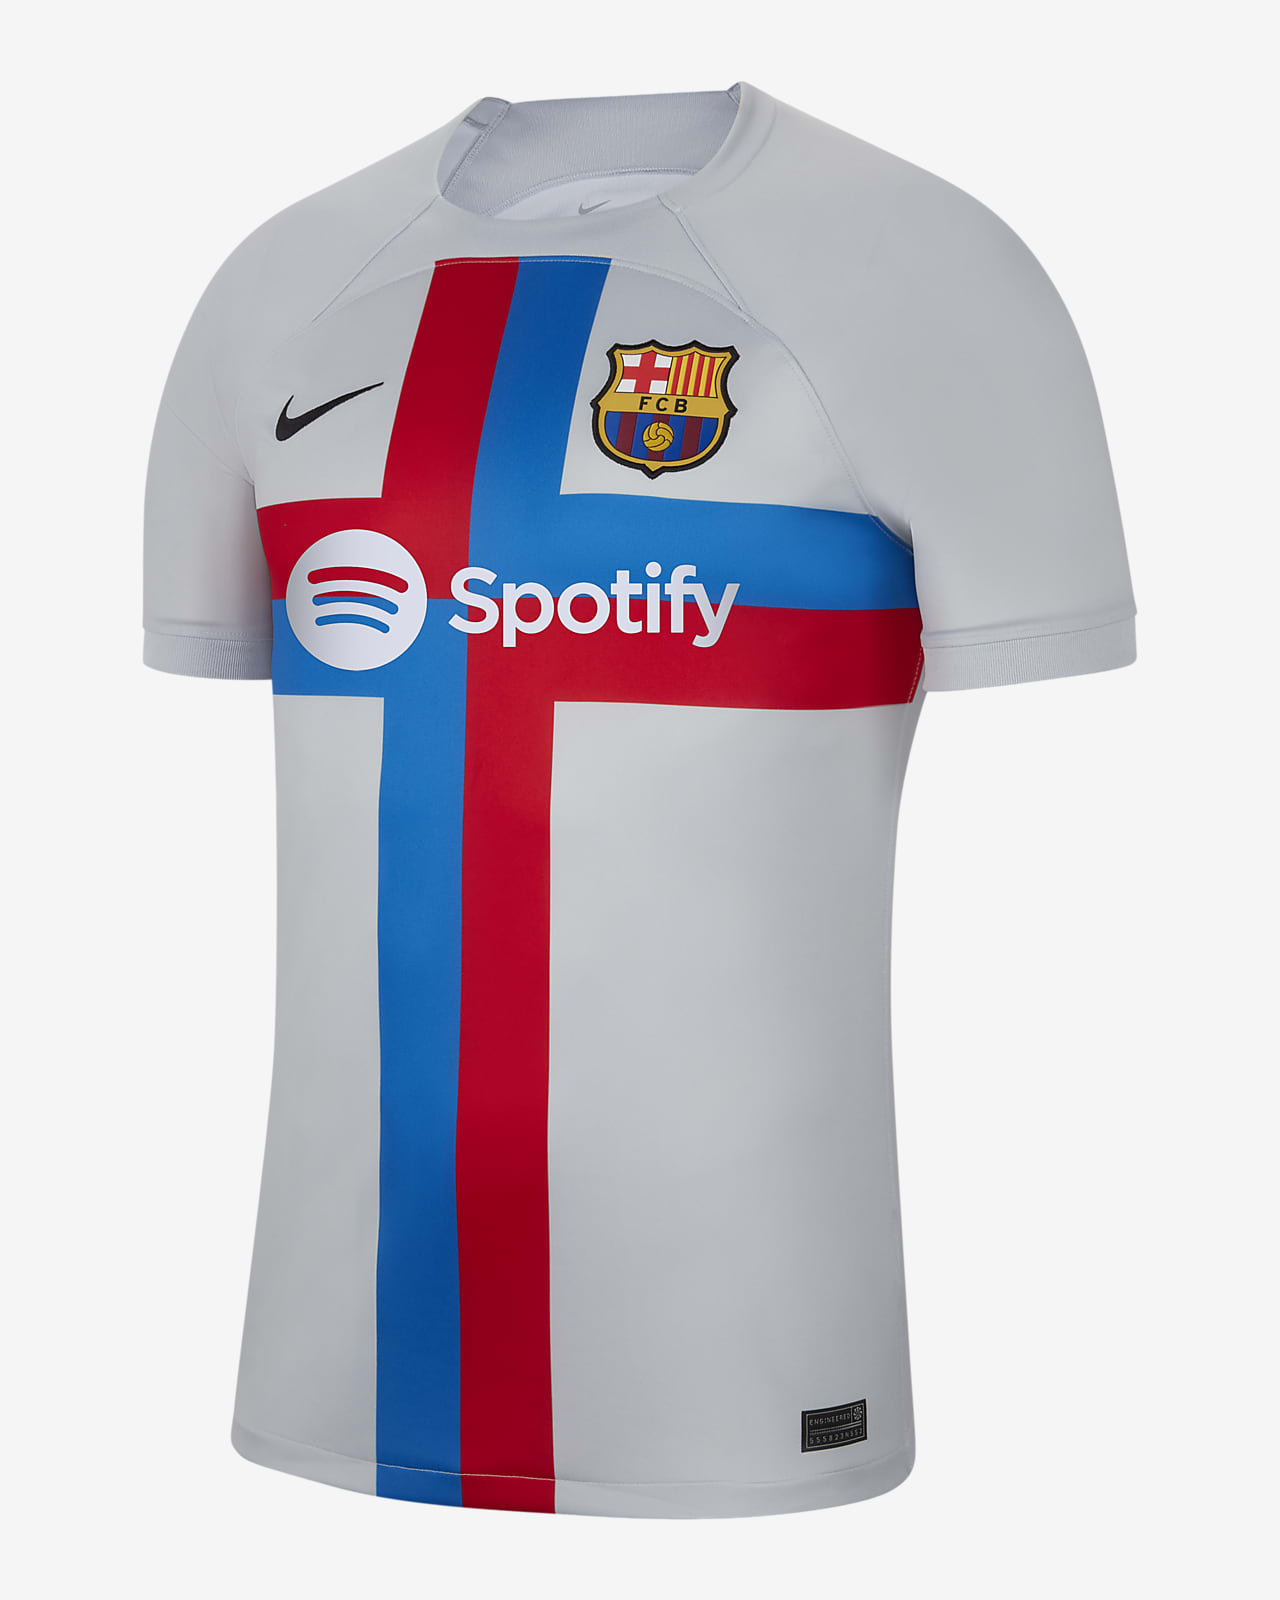 Camiseta De Barcelona Ubicaciondepersonas Cdmx Gob Mx